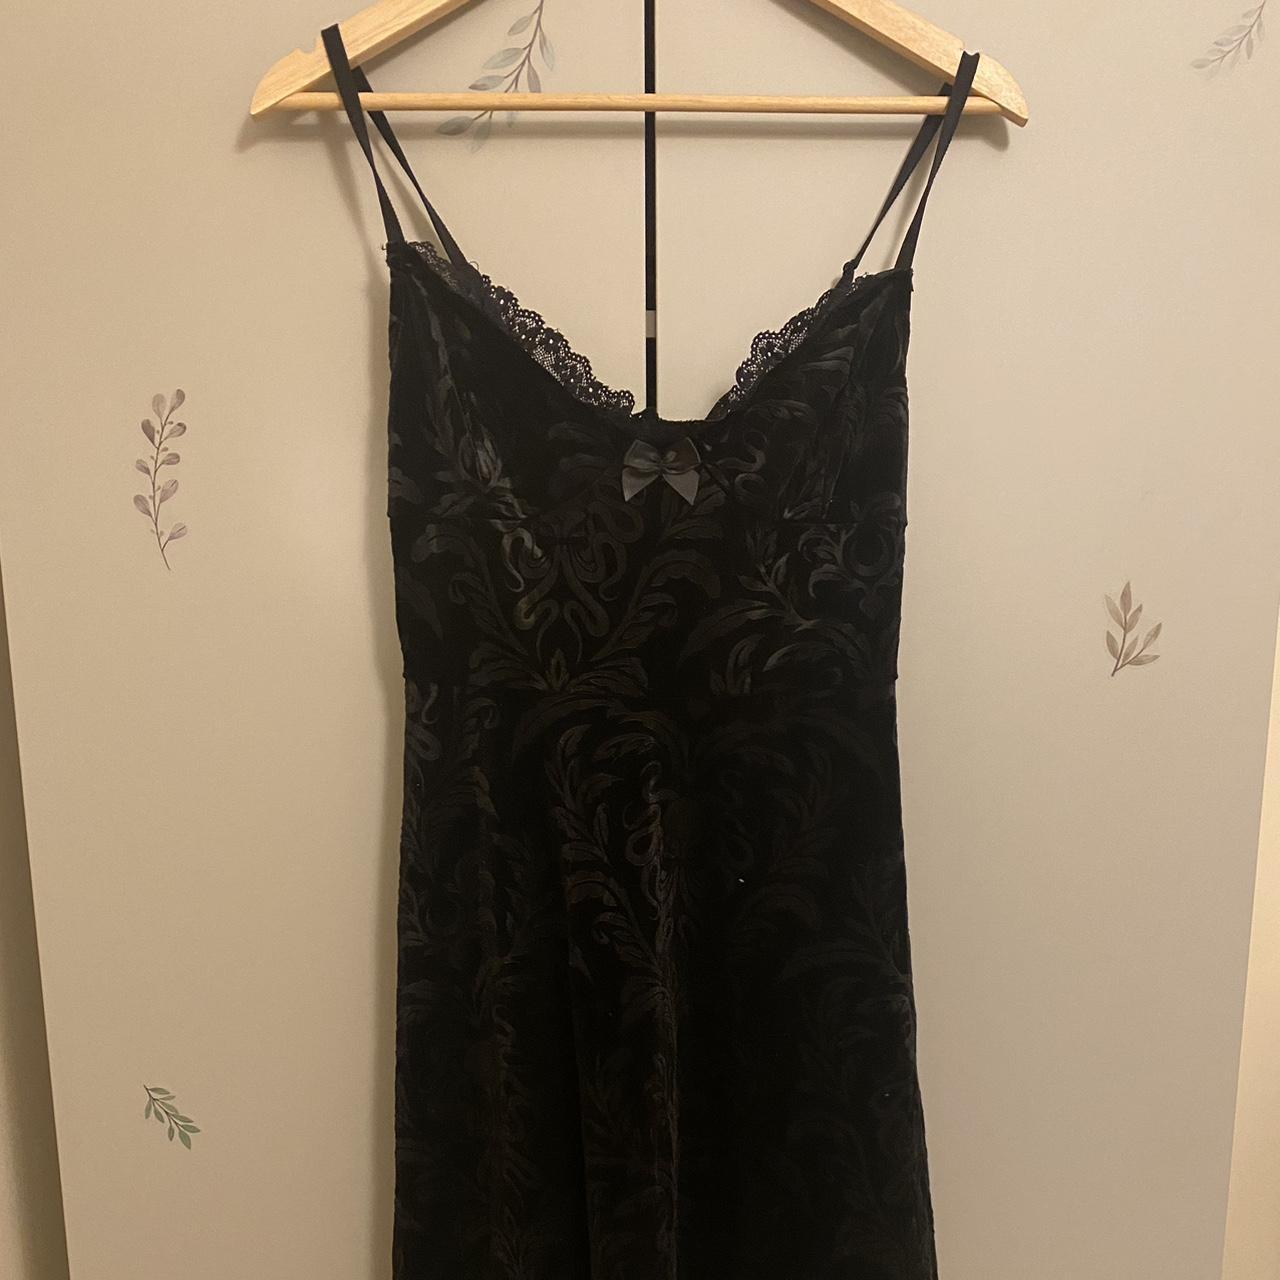 Black killstar dress with corset back! Still has... - Depop